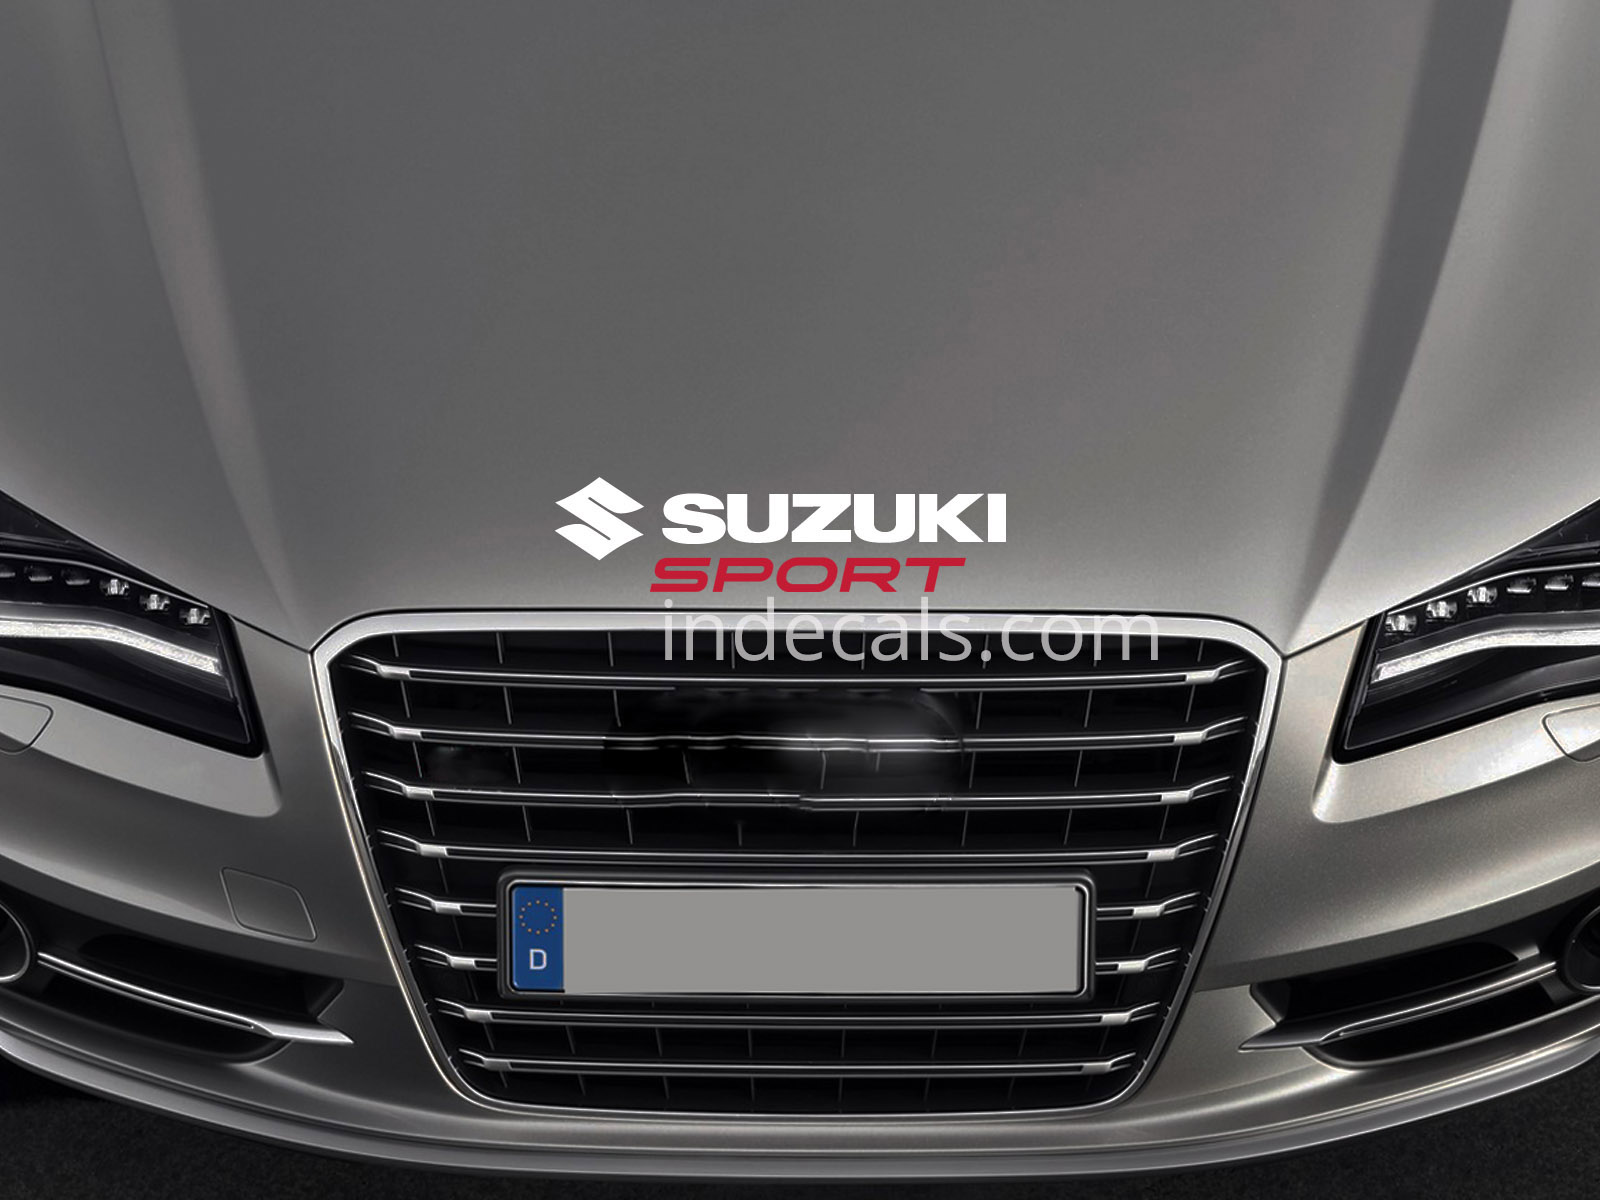 1 x Suzuki Sport Sticker for Bonnet - White & Red